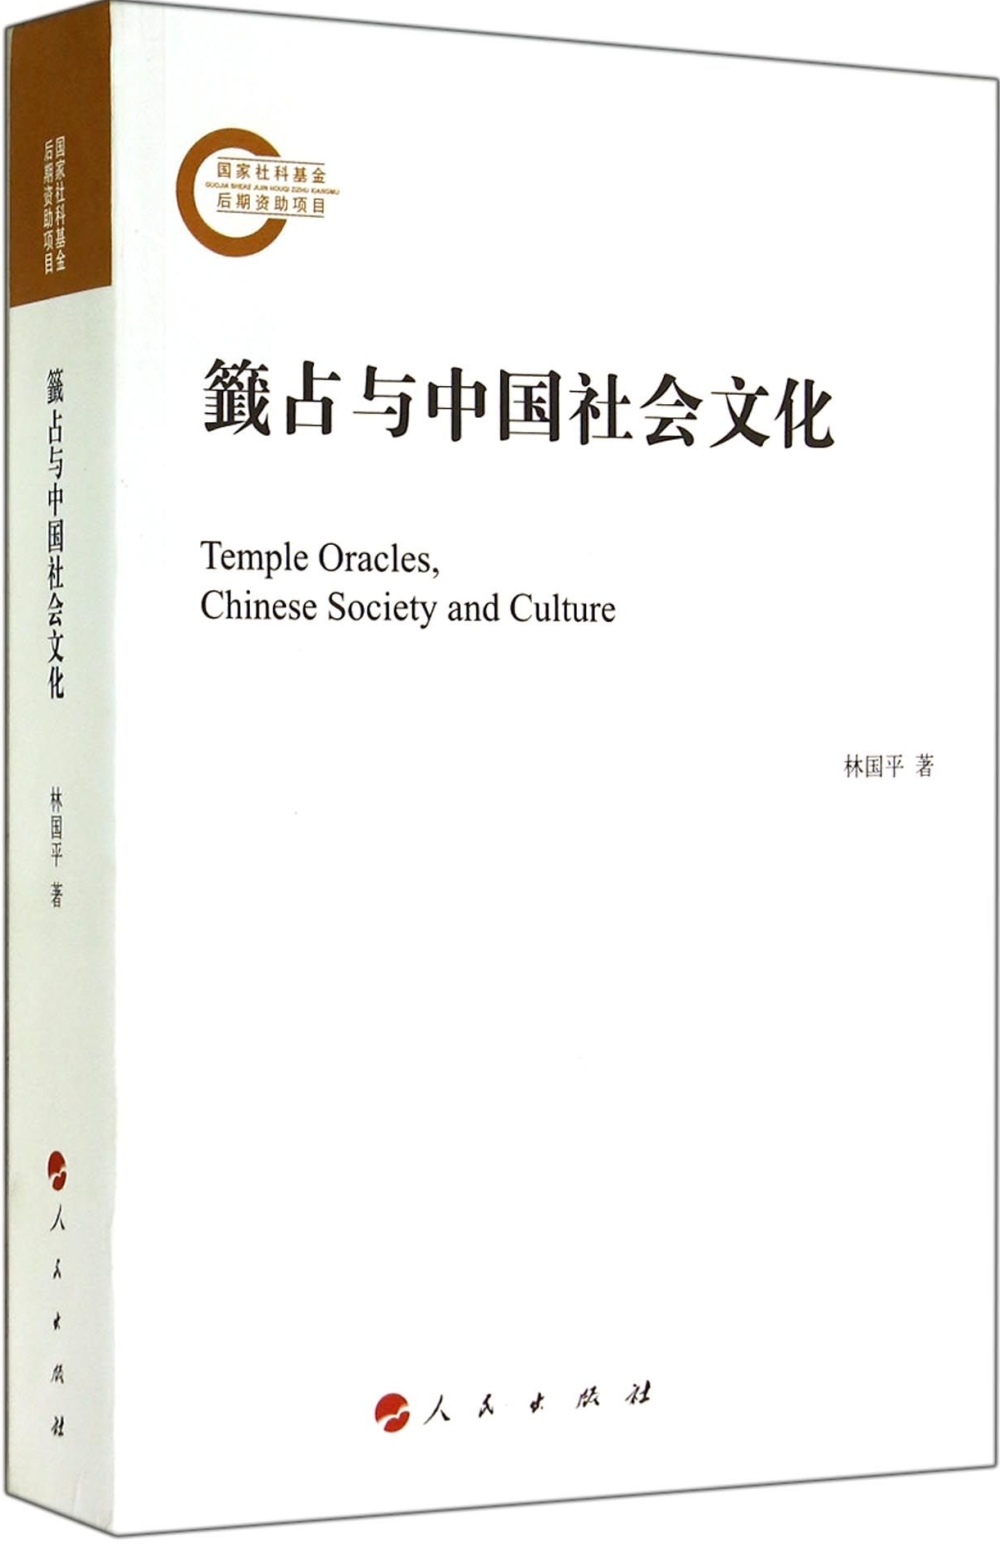 籤占與中國社會文化